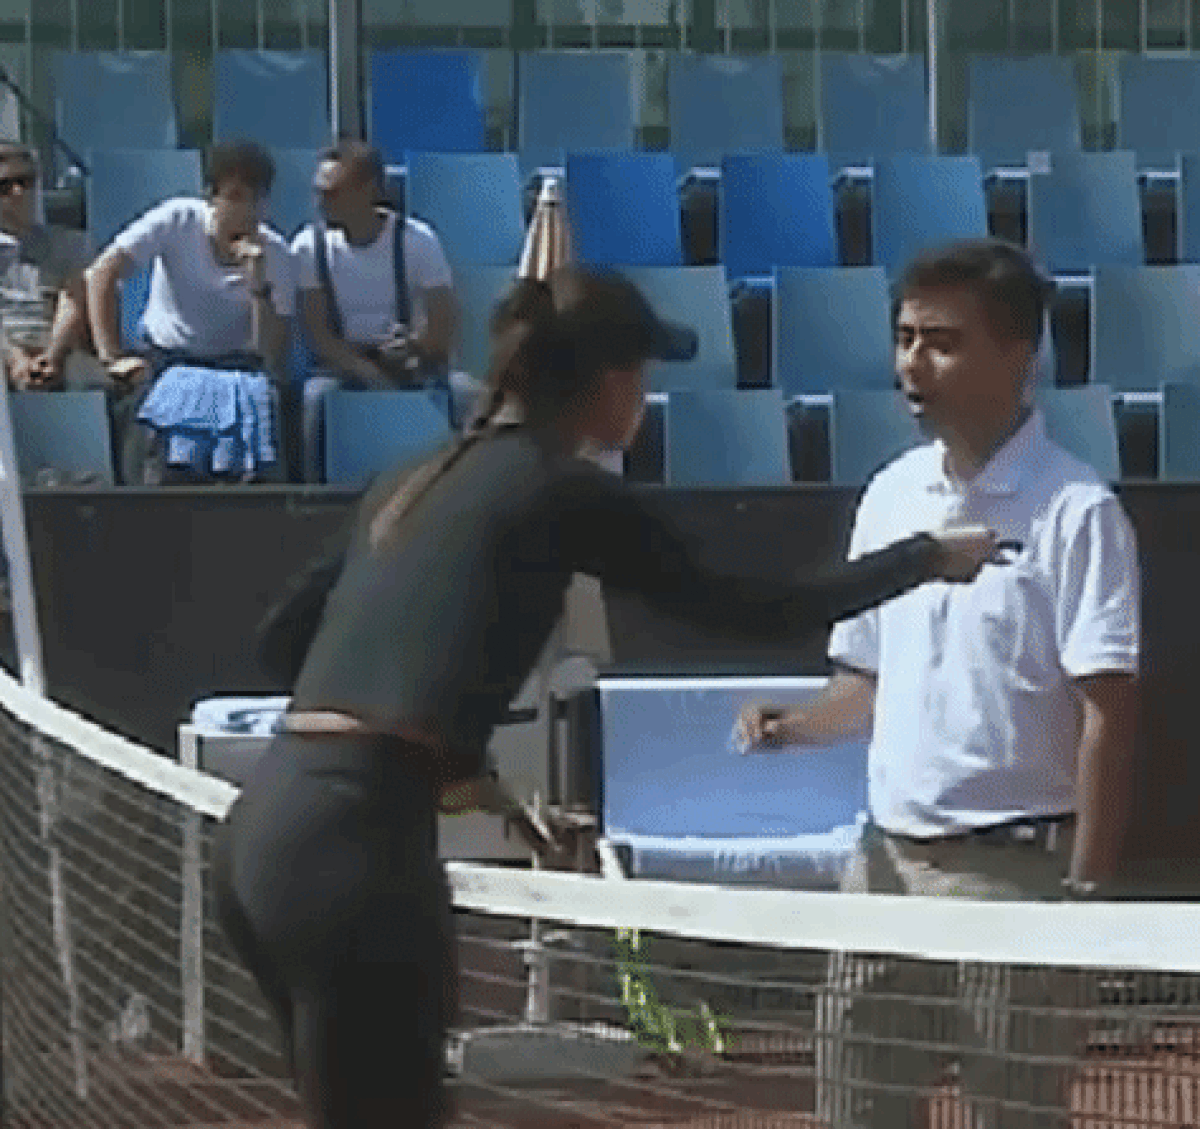 WTA ISTANBUL // VIDEO+FOTO Sorana Cîrstea, gest reprobabil în meciul cu Barbora Strycova! L-a bruscat pe arbitru: „Ești nebun sau orb?”